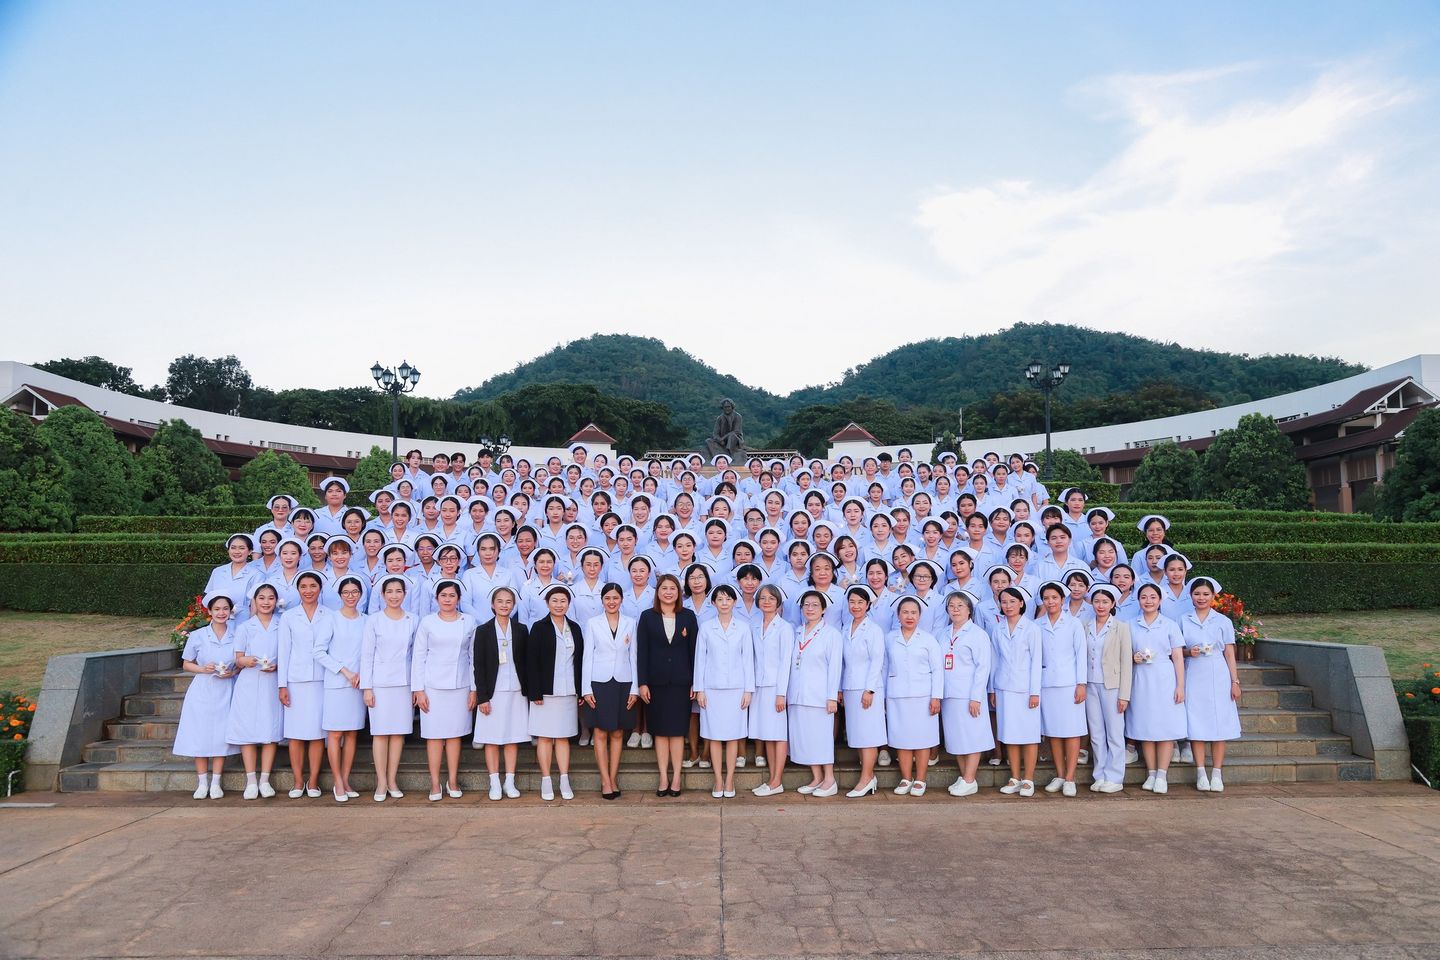 พิธีมอบหมวก ดวงประทีป และเข็มชั้นปีแก่นักศึกษาพยาบาล 3 ตุลาคม 2566 A ceremony awarding nurses’ caps, lamps, and class pins to third year nursing students. 